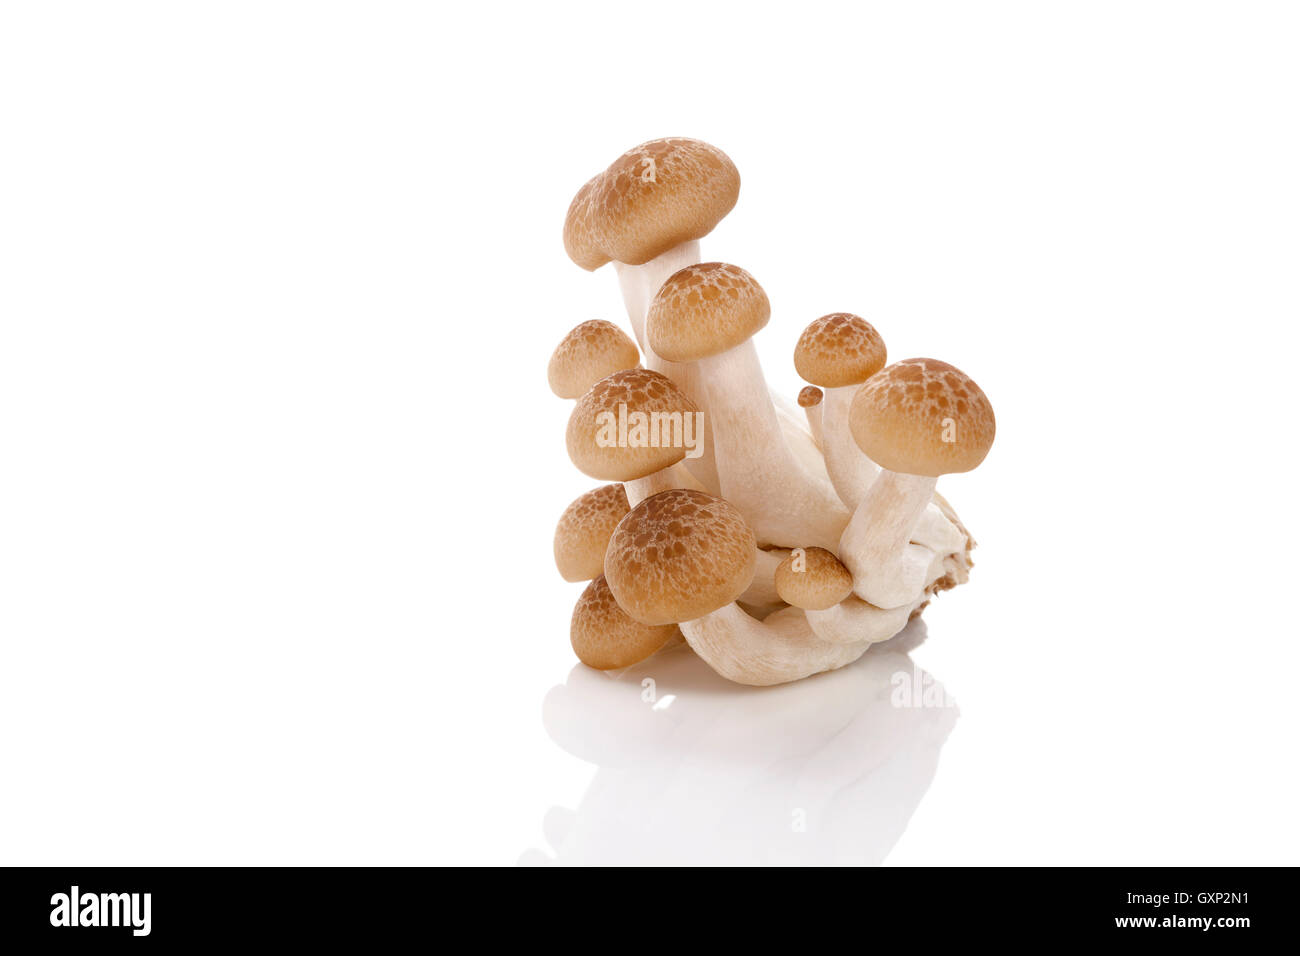 Culinario funghi shimeji isolati su sfondo bianco. Fungo sano di mangiare. Foto Stock